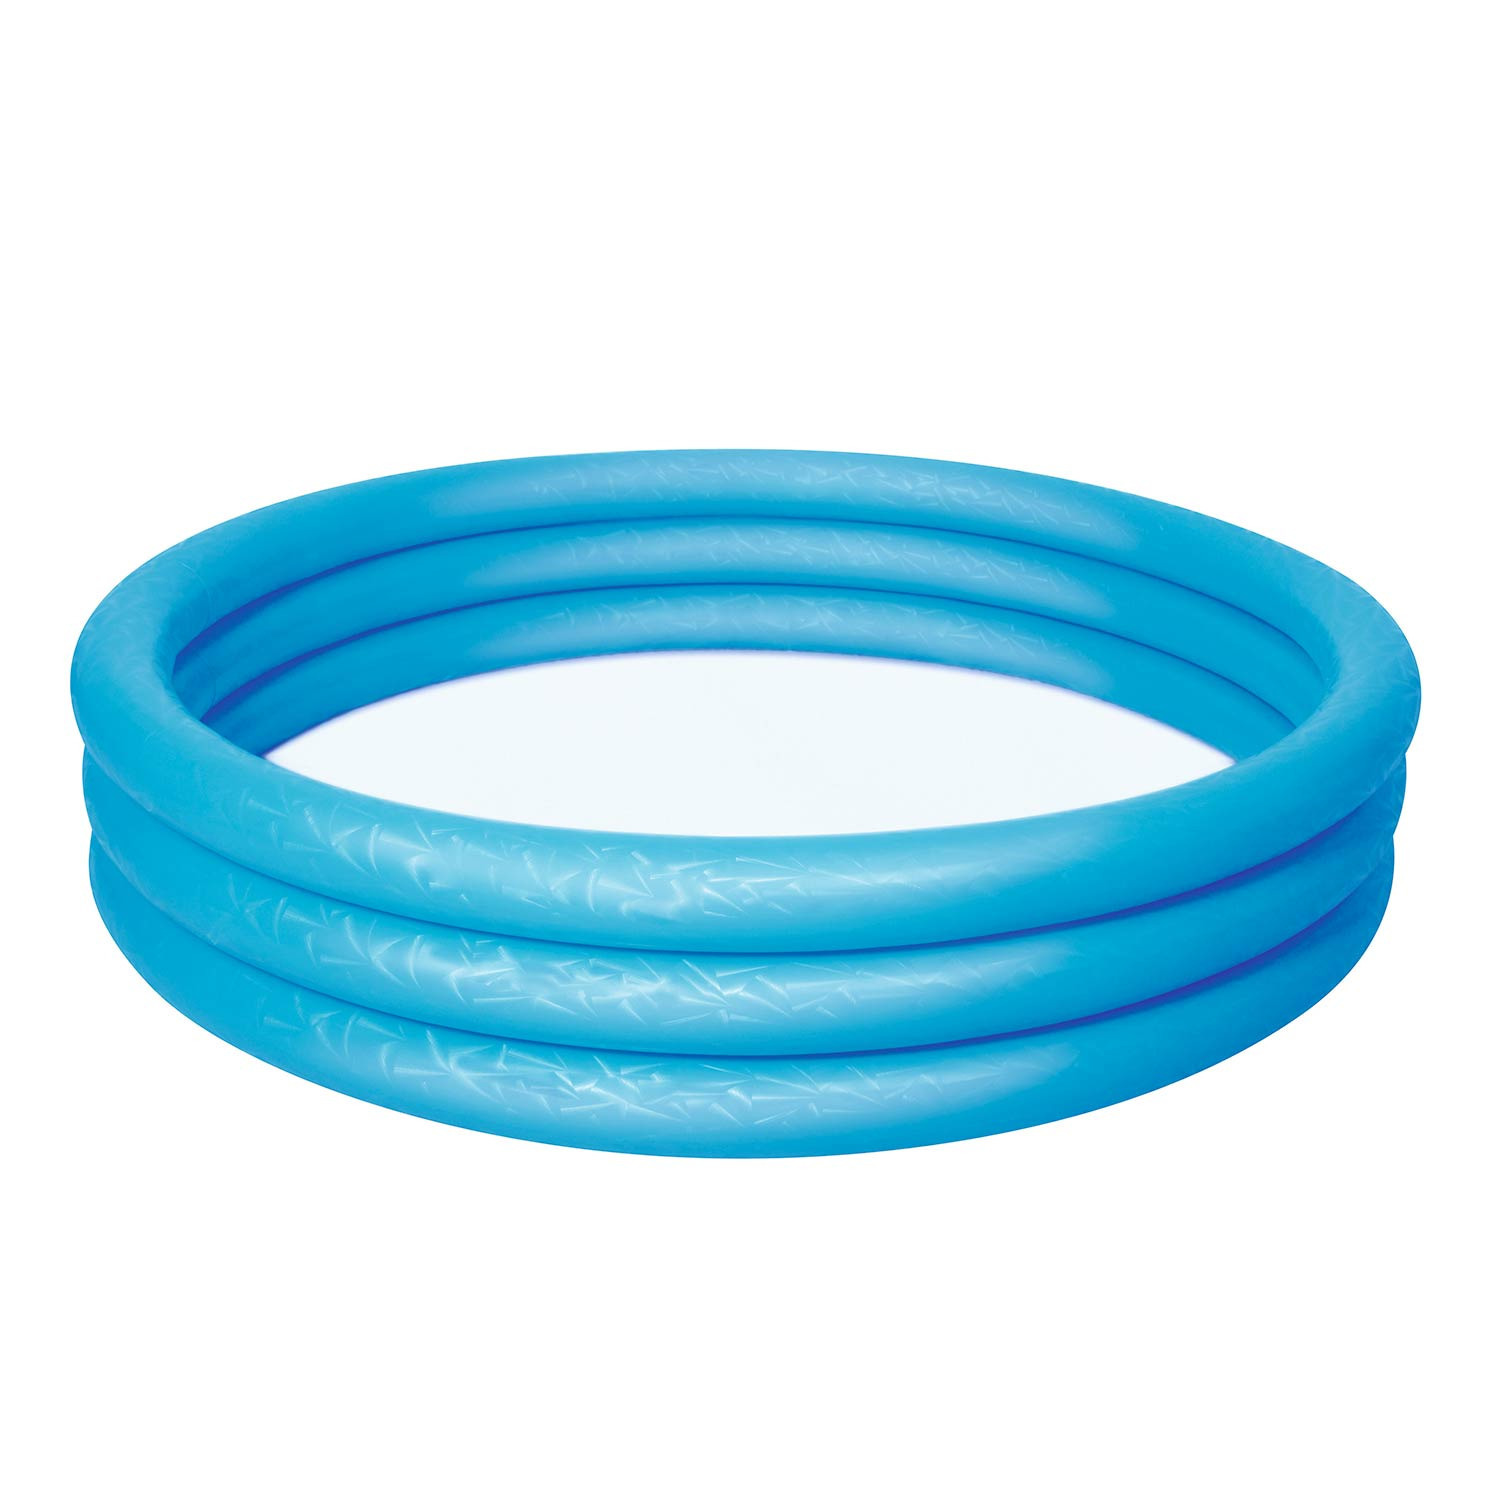 Blauw opblaas zwembad voor kinderen 152cm